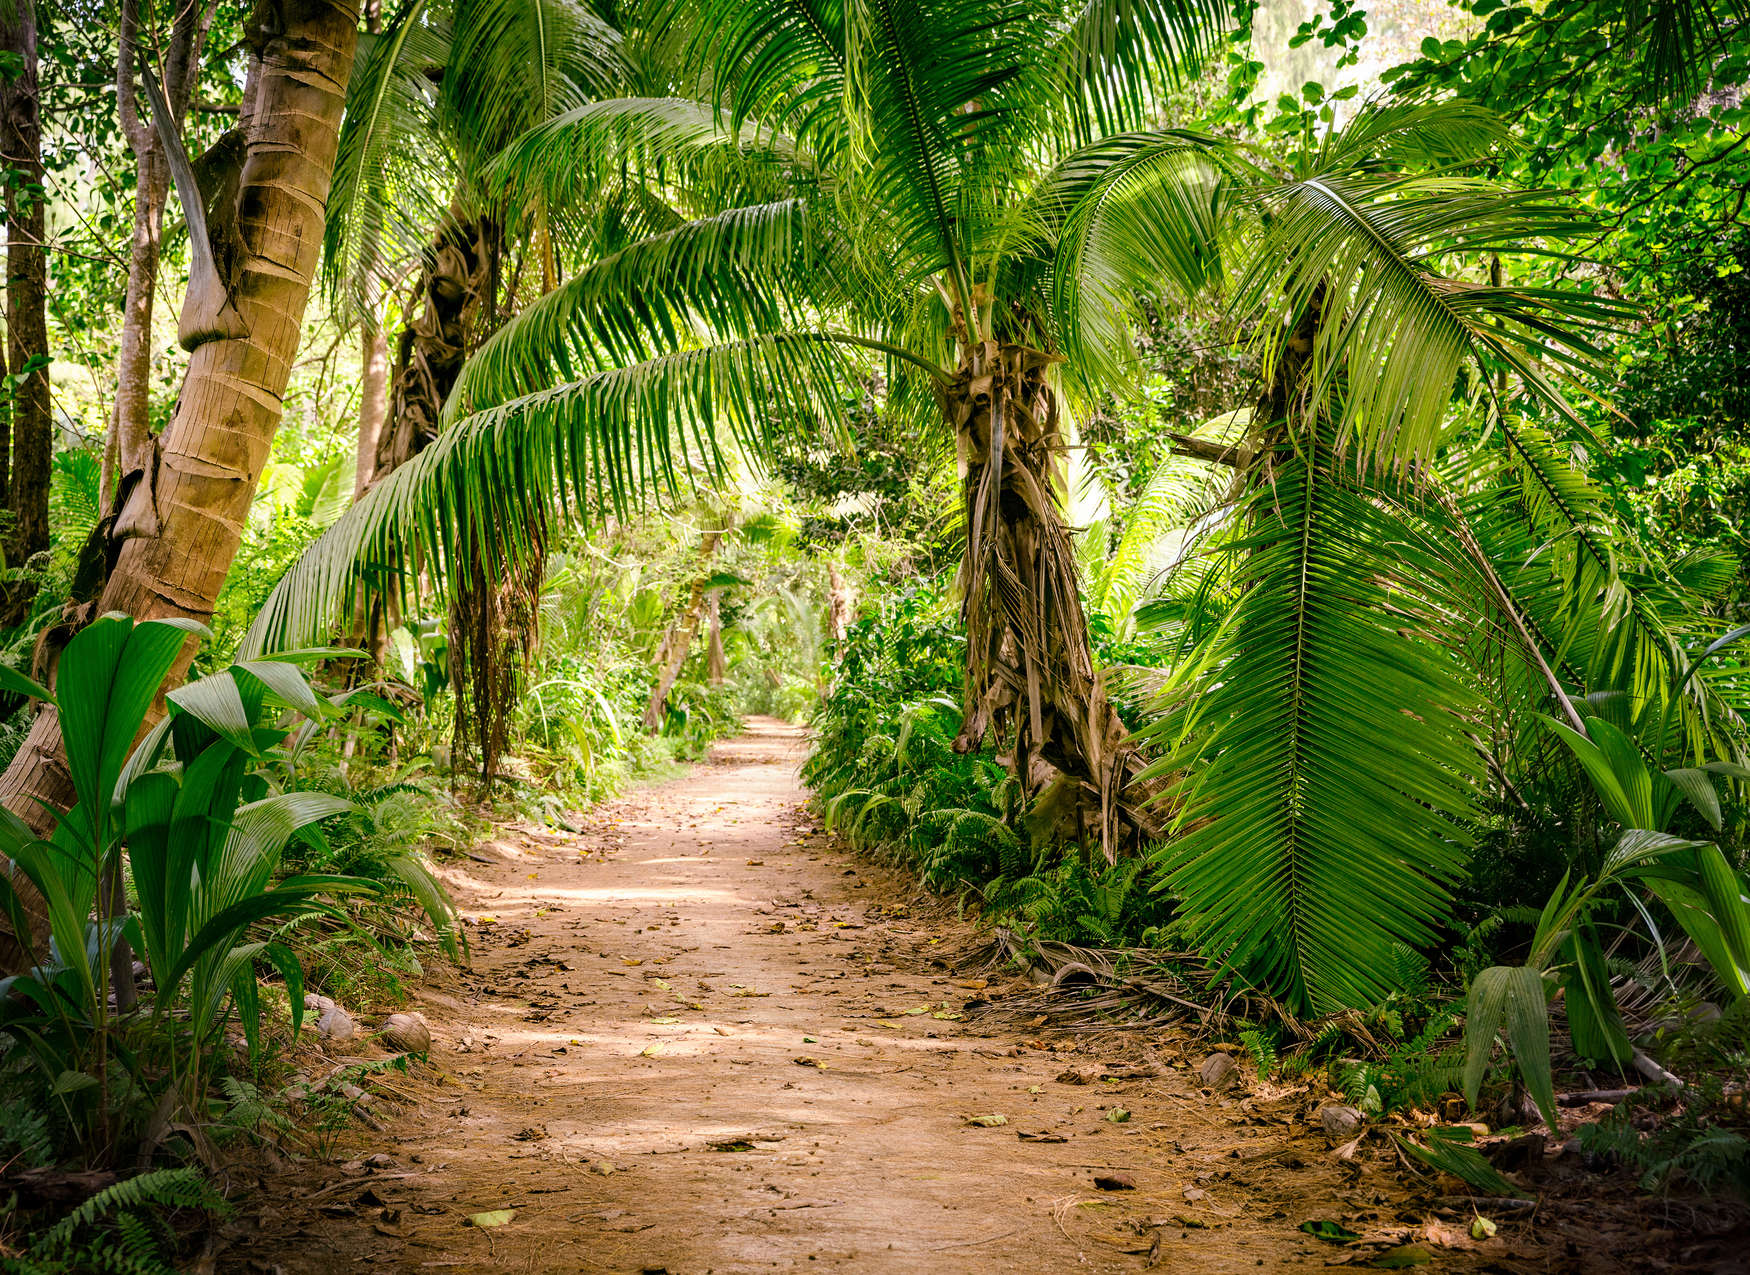             Palmenweg durch eine tropische Landschaft – Grün, Braun
        